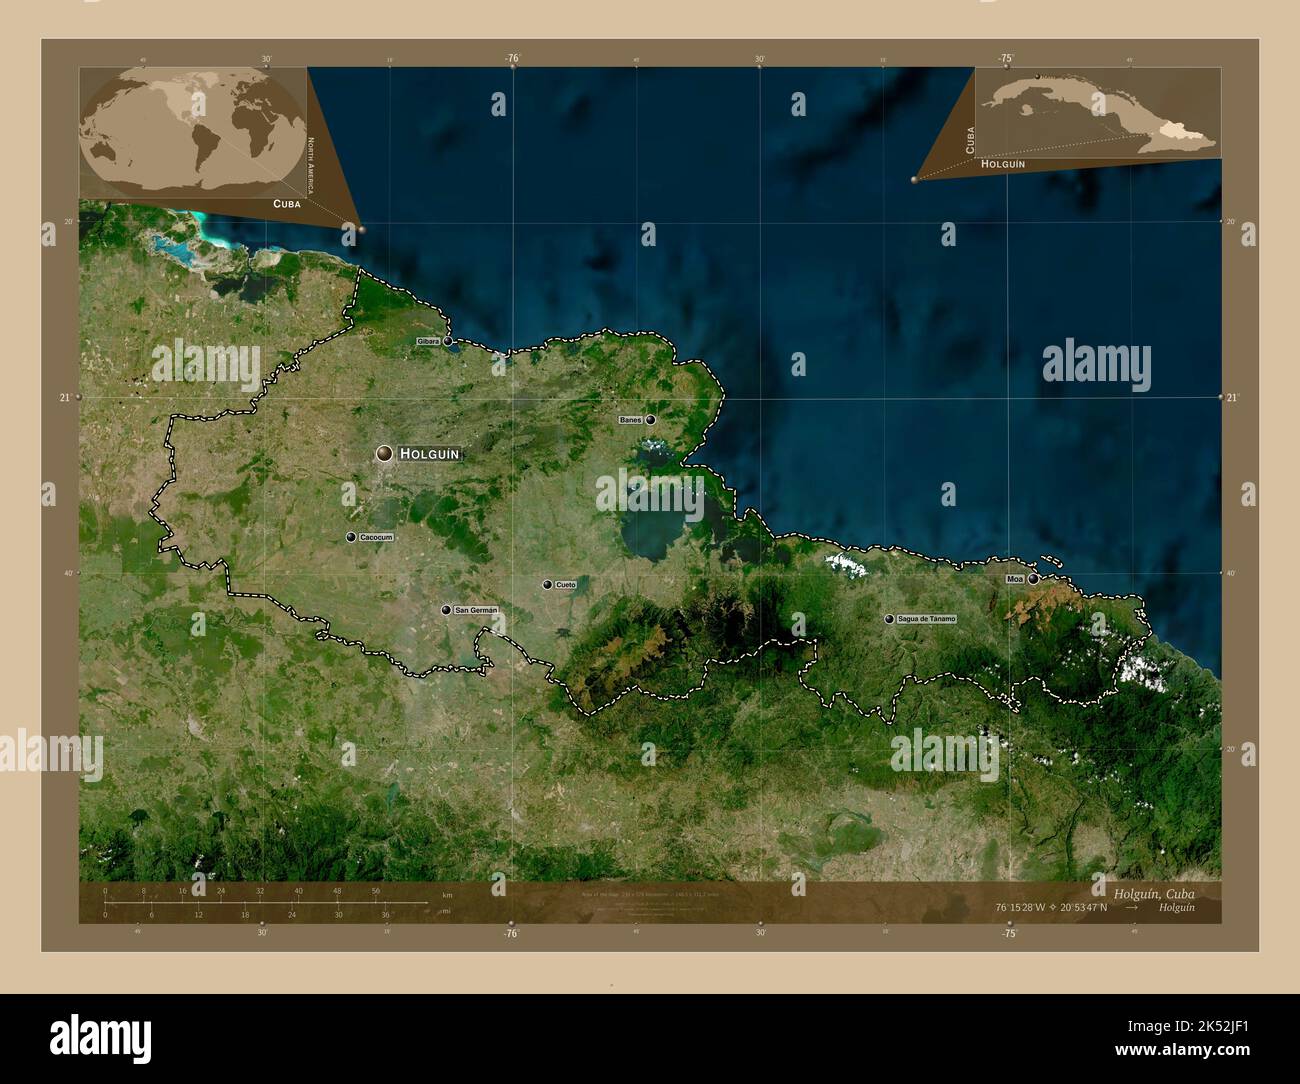 Holguin Province De Cuba Carte Satellite Basse Resolution Lieux Et Noms Des Principales Villes De La Region Cartes D Emplacement Auxiliaire D Angle 2k52jf1 